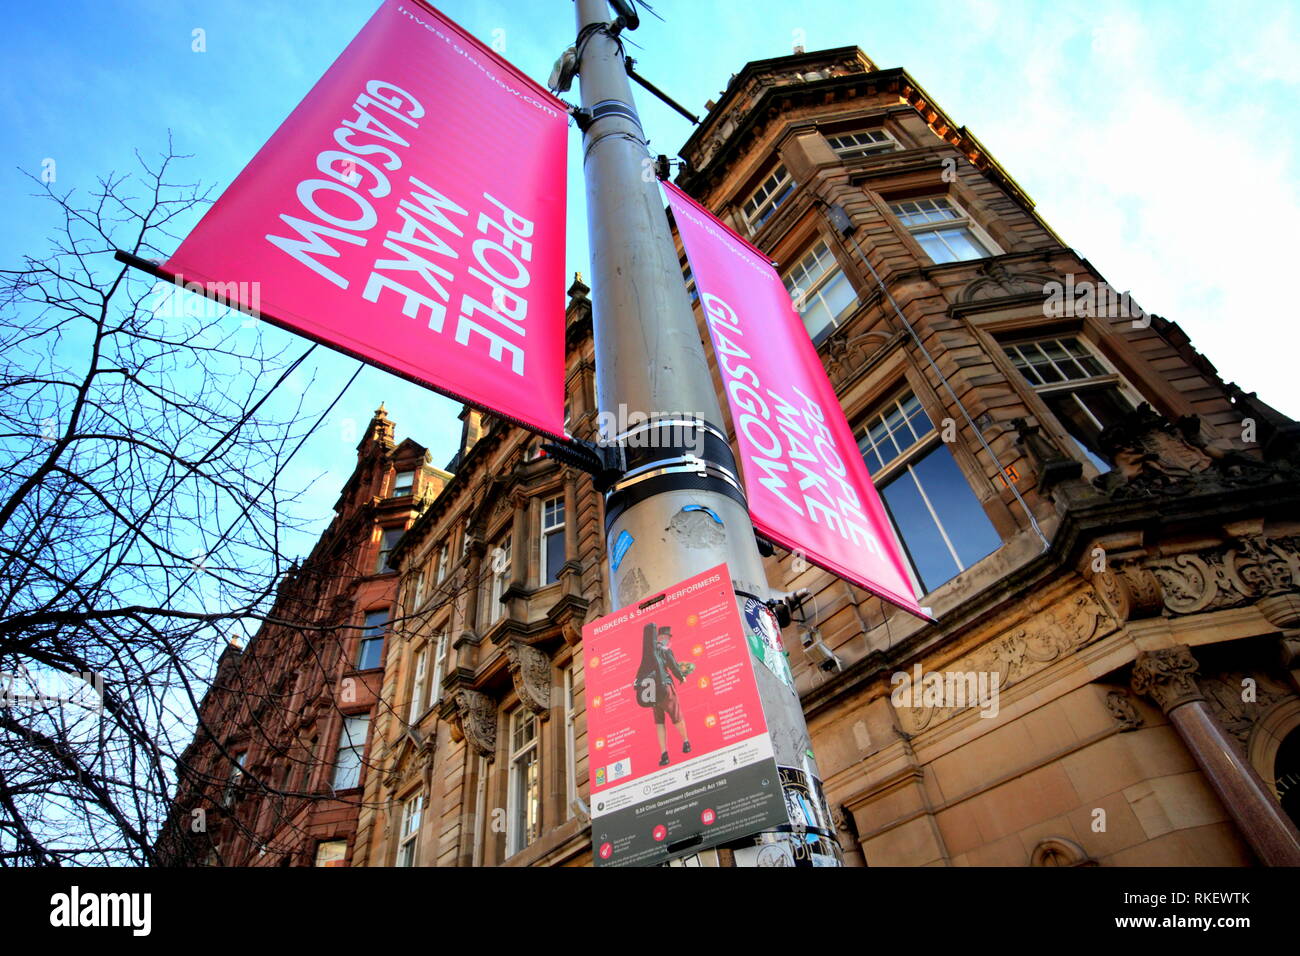 Glasgow, Schottland, Großbritannien, 7. Februar, 2019 ein Gaukler Charta wurde auf der Stadt Buchanan Street bekannt und durch den Rat als Stil Meile gefördert, um die unkontrollierte Tätigkeit der Straßenkünstler in der Innenstadt zu beschneiden. Zahlreiche Beschwerden über die Qualität und die Lautstärke mit einem Mangel an Auswahl hat der Rat einige Richtlinien für ungebetene Aufführungen zu setzen. Sogar die lokale Bettler beschweren sich darüber, dass die Straßen nicht ein schönes Hotel mit vielen Künstlern, die bis spät in die Nacht Gerard Fähre / alamy Leben Nachrichten werden Stockfoto